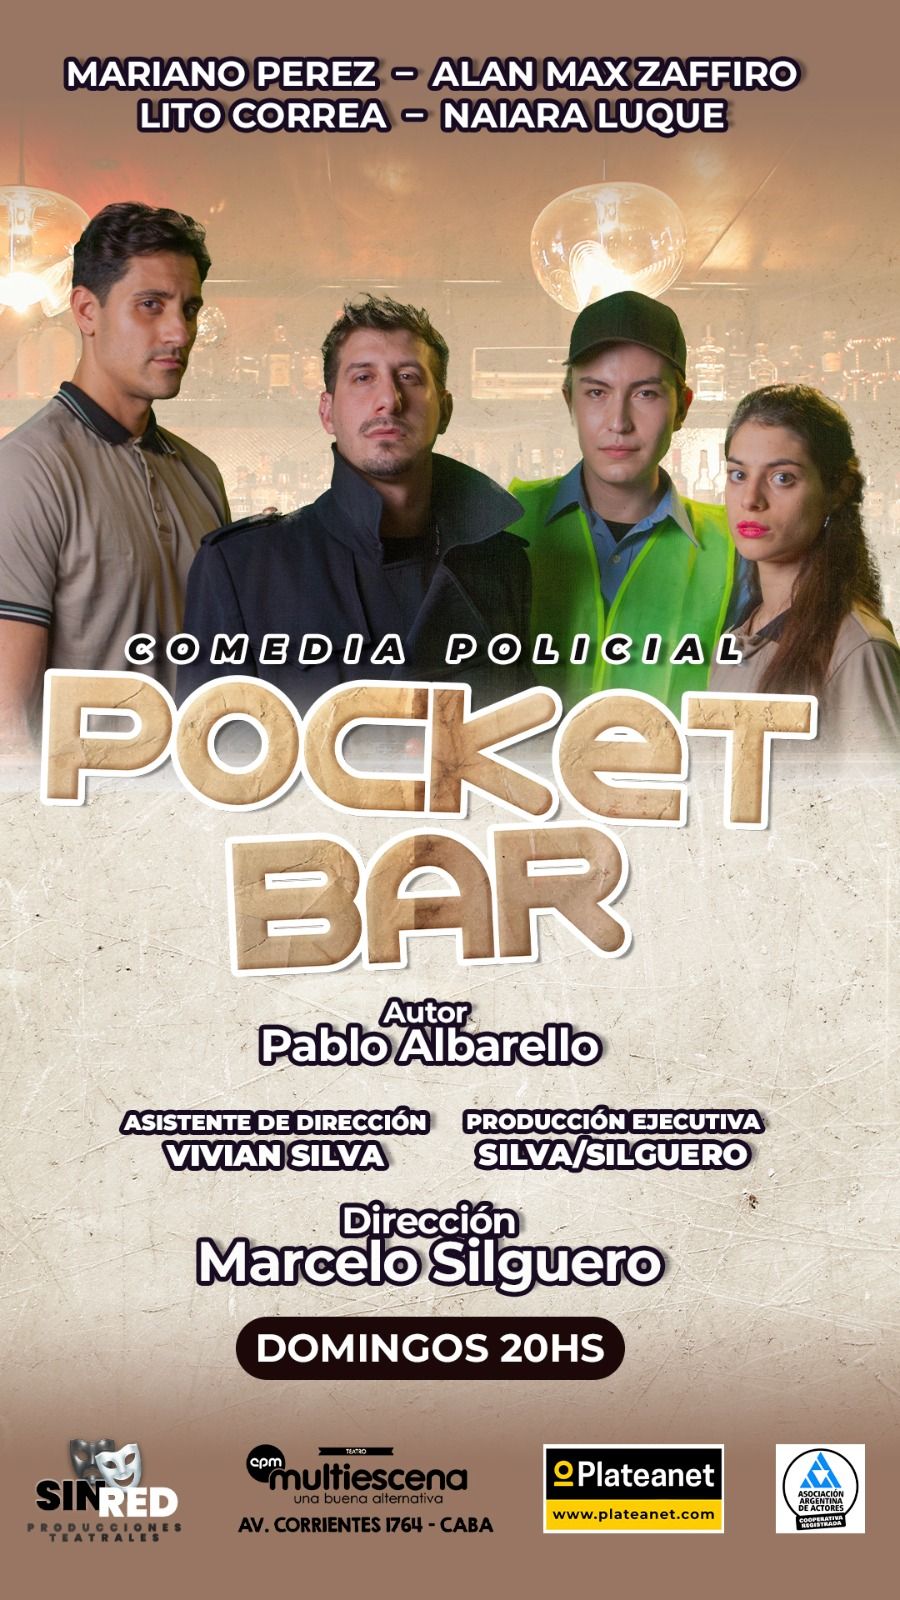 Pocket Bar